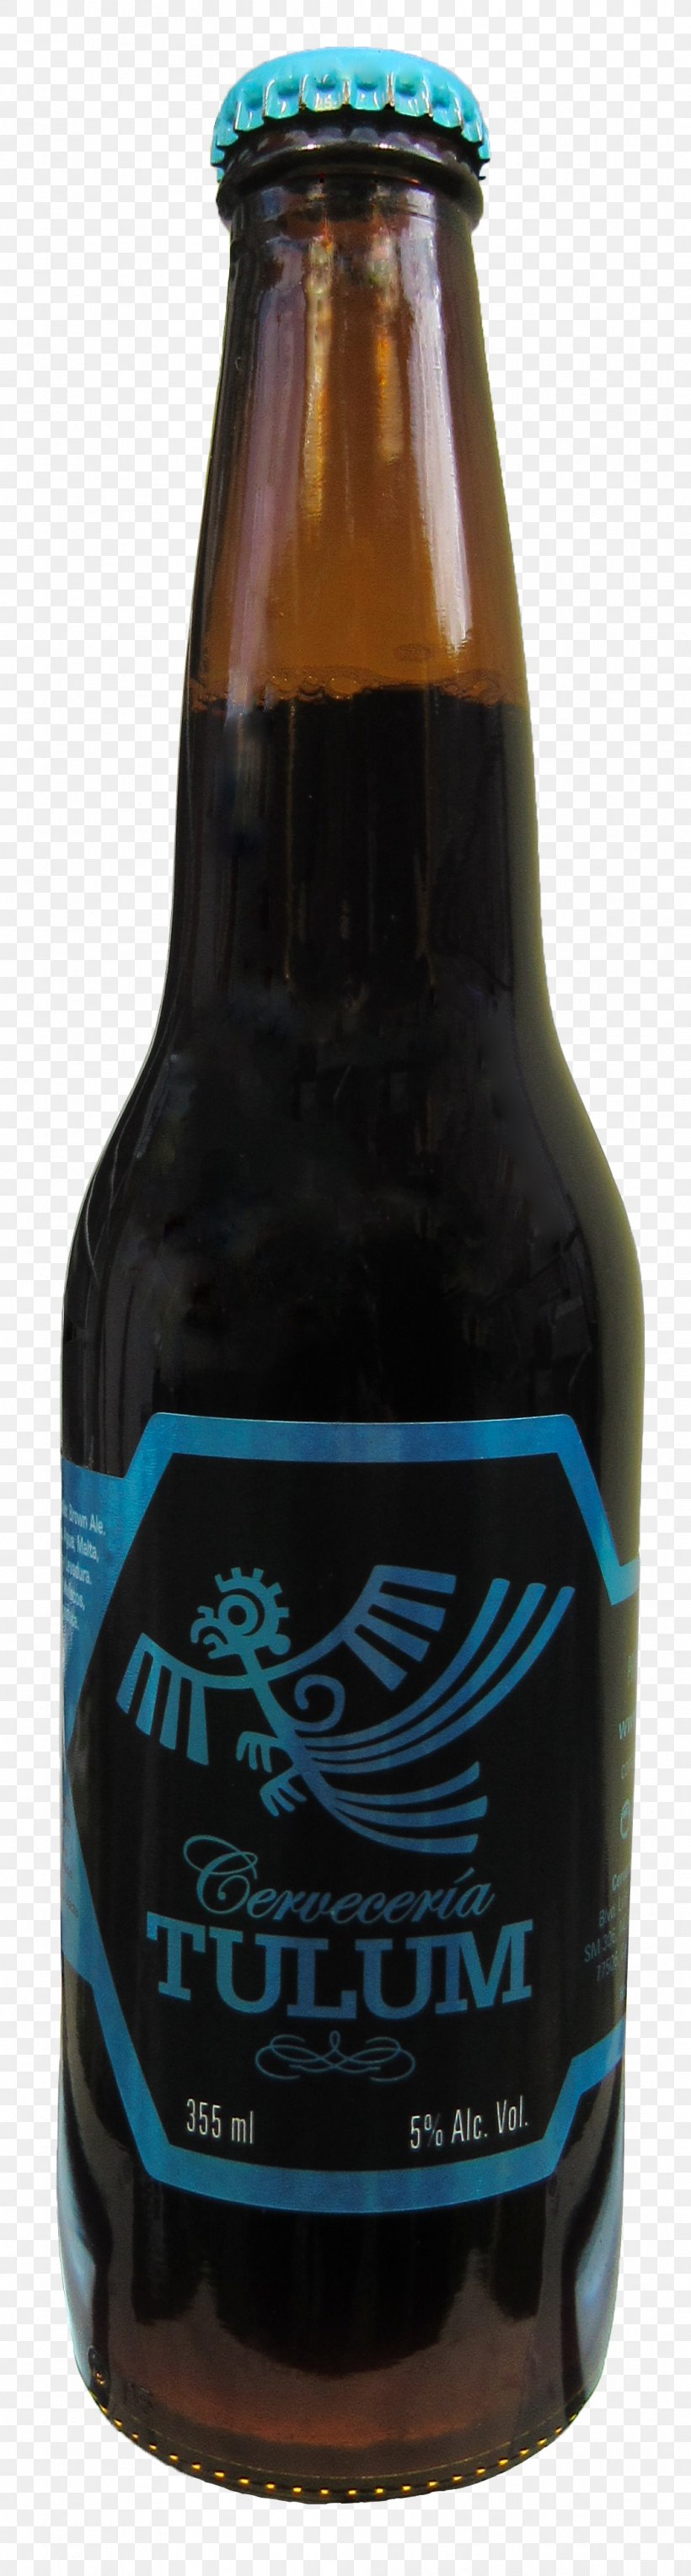 Ale Beer Bottle Wine Glass Bottle, PNG, 1058x3947px, Ale, Alcoholic Beverage, Beer, Beer Bottle, Bottle Download Free